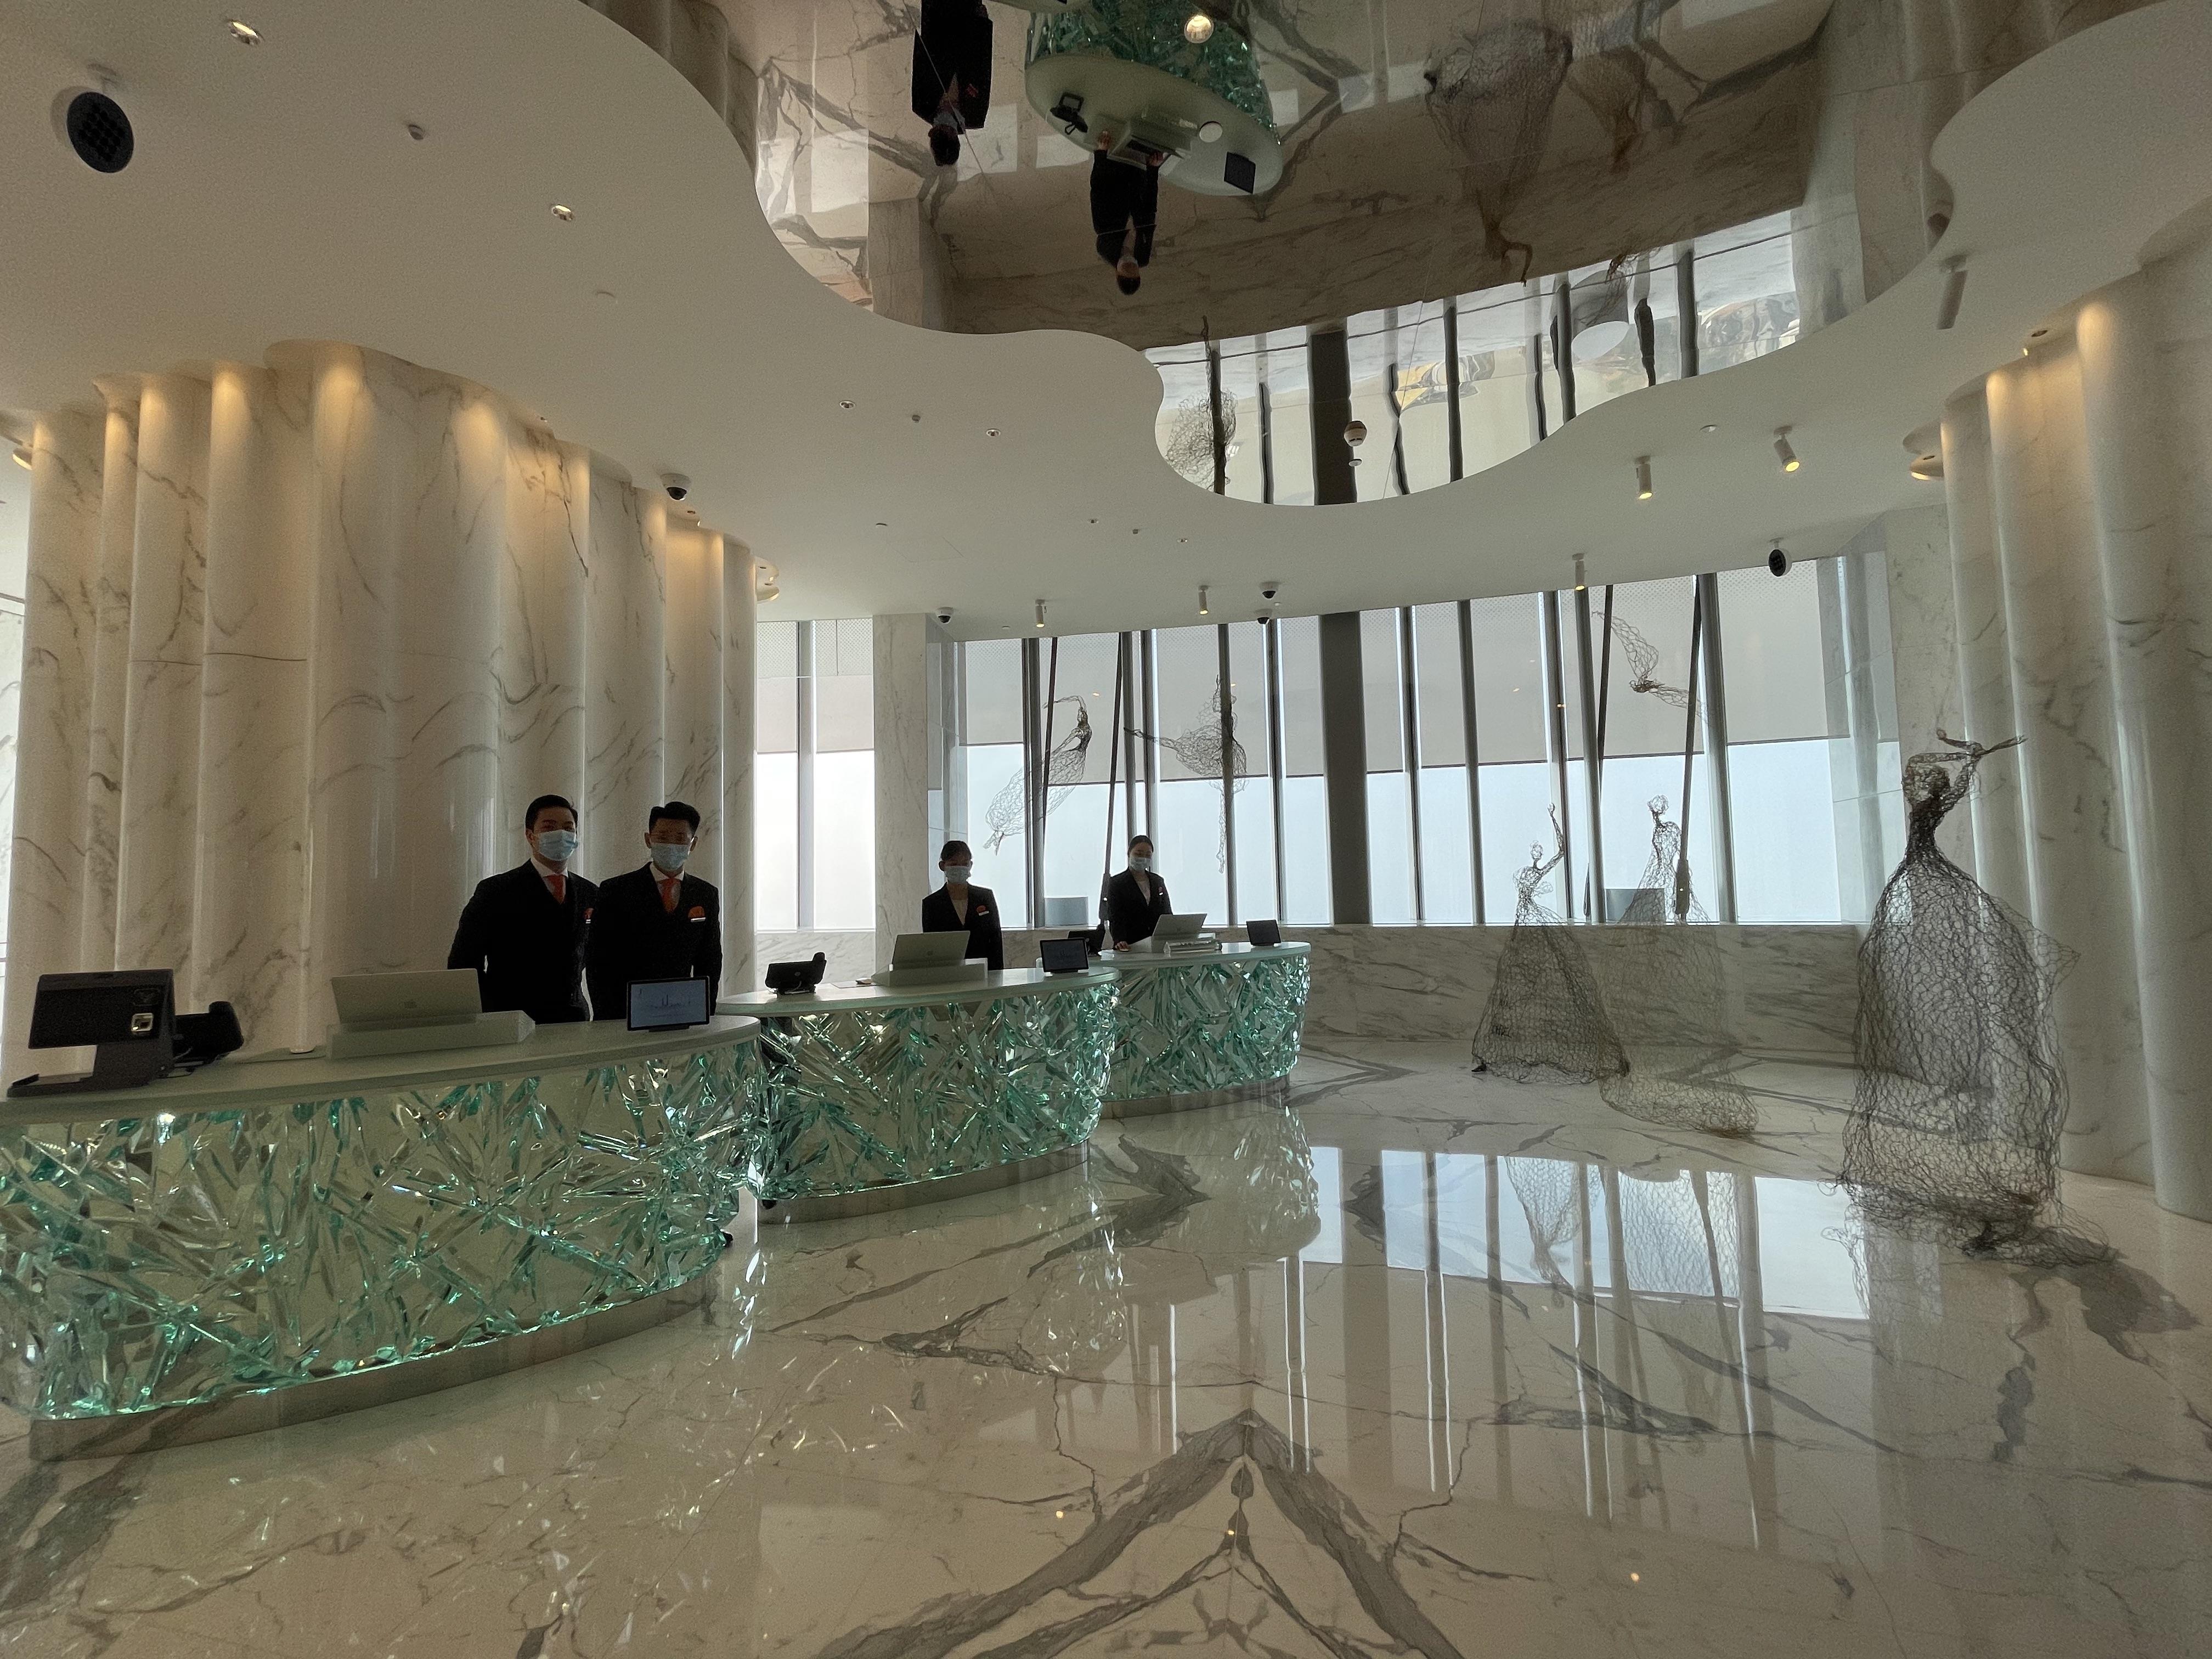 揭秘全球最高酒店:上海中心J酒店启动内部试营业